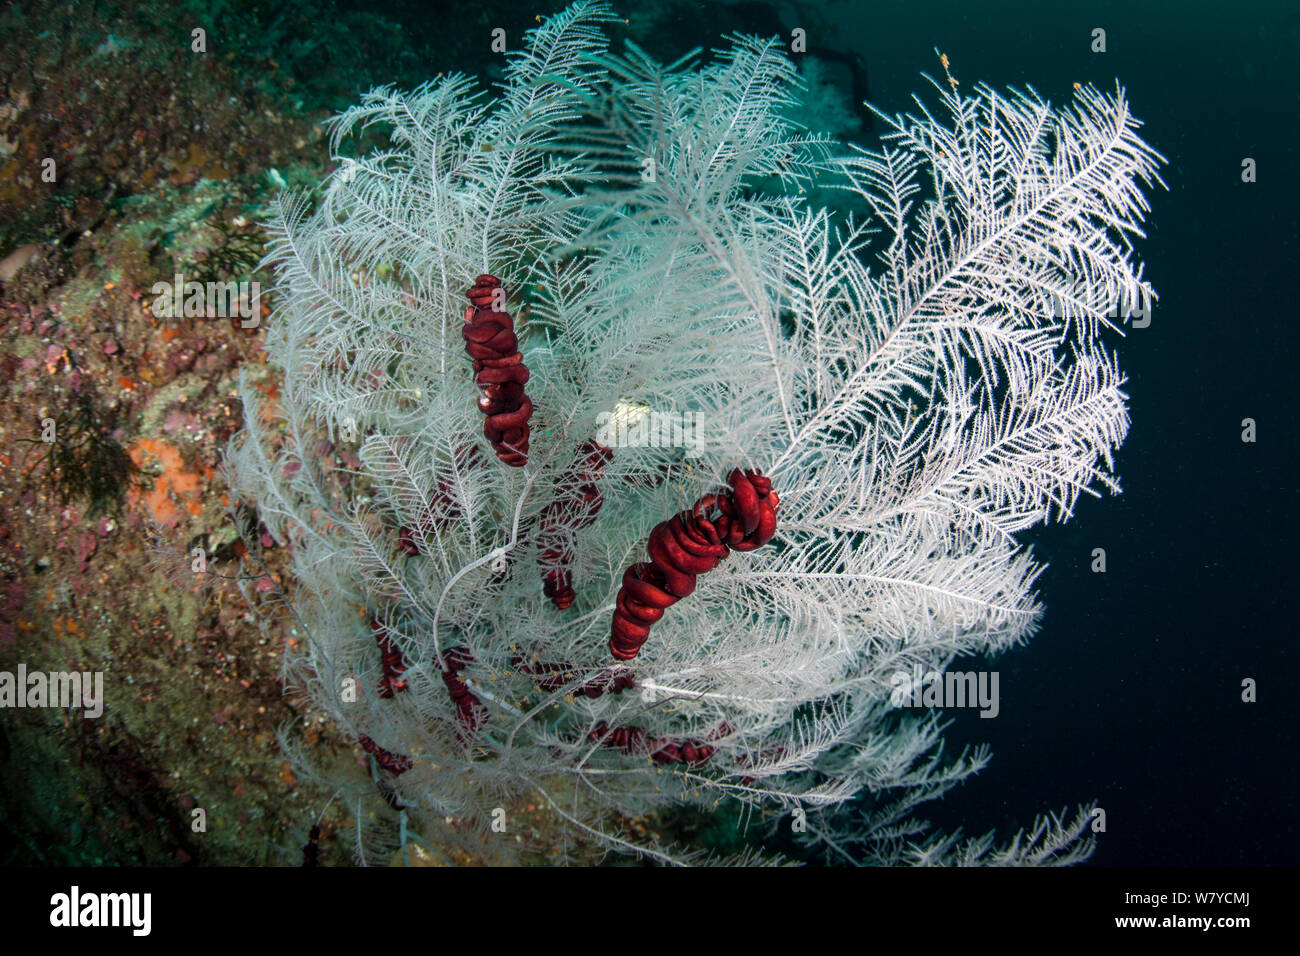 Fjordland Schwarzen Korallen (Antipathella fiordensis) leben in einer symbiotischen Beziehung mit der Schlange Star (Astrobrachion constrictum) in den Dusky Sound, Fiordland National Park, Neuseeland. Stockfoto